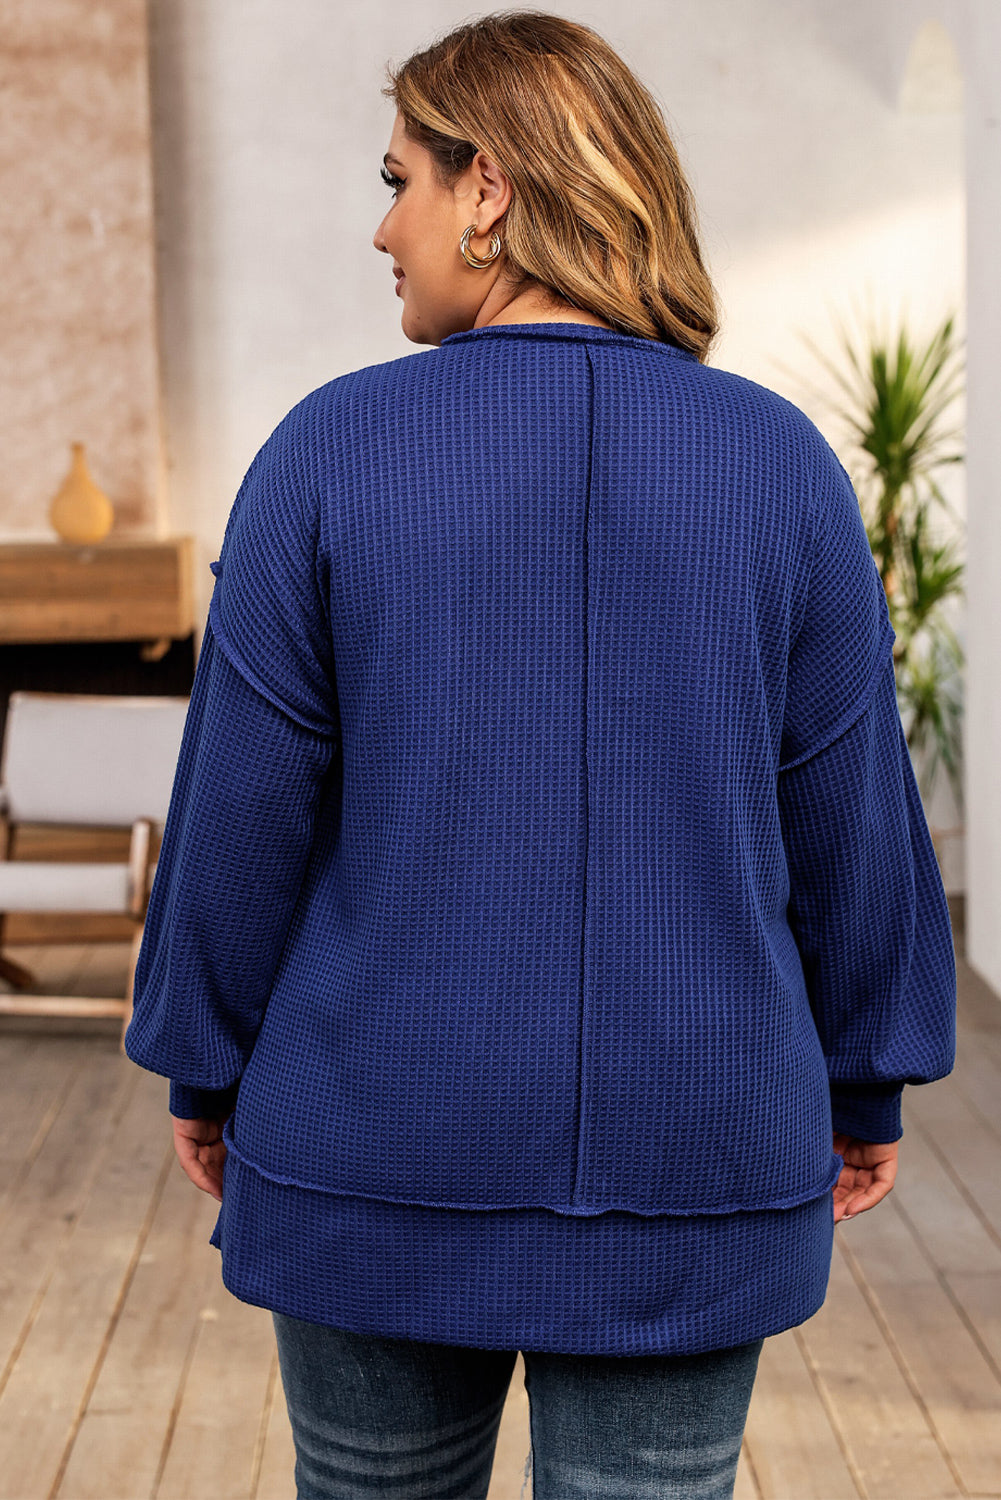 Haut surdimensionné bleu à coutures apparentes en tricot gaufré de grande taille